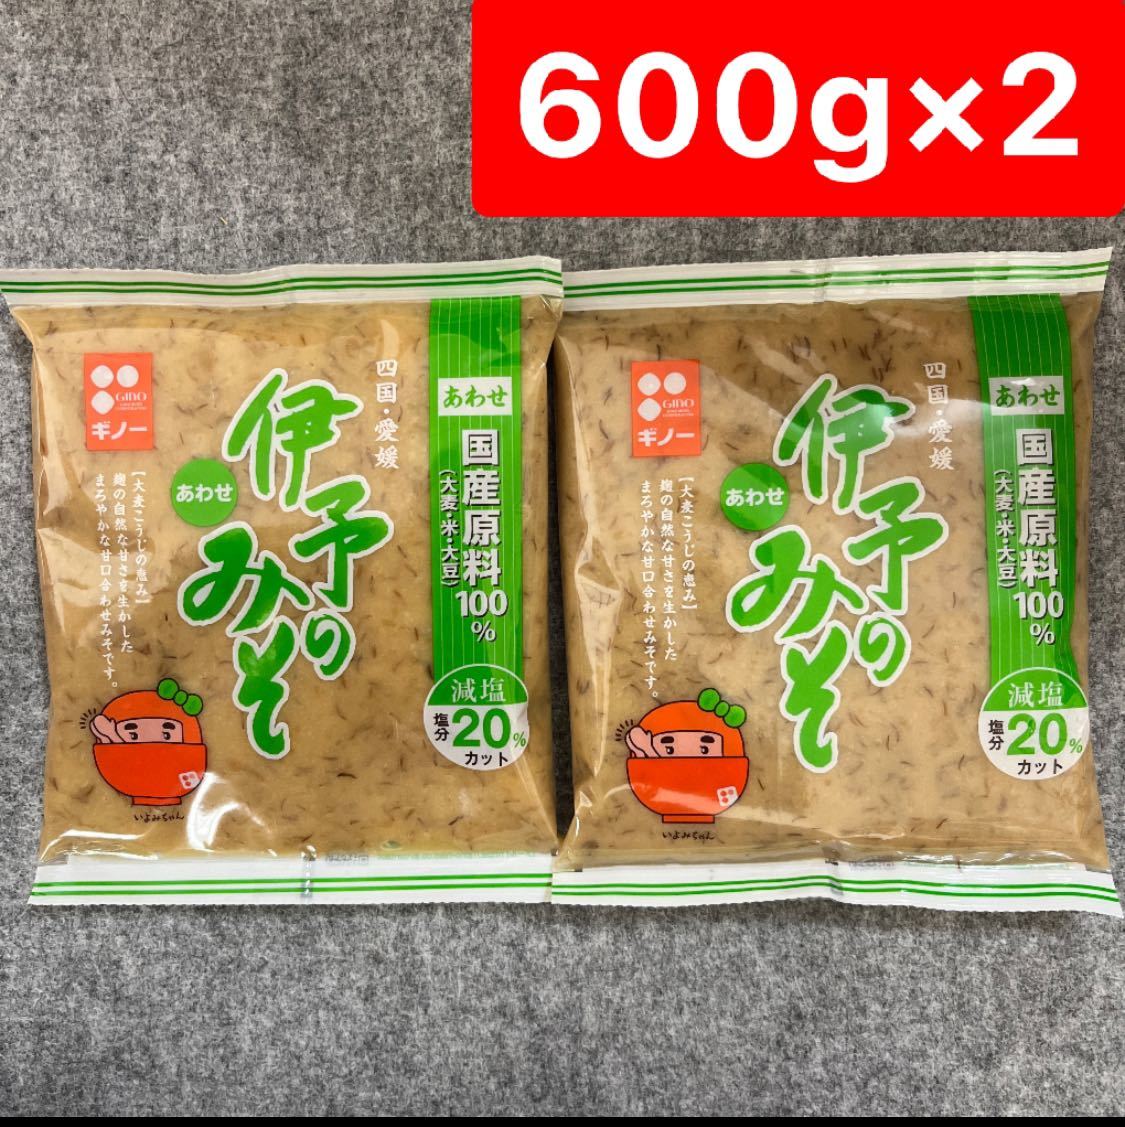 .. only .... taste .600g×2 piece set Ehime prefecture . present ground taste .